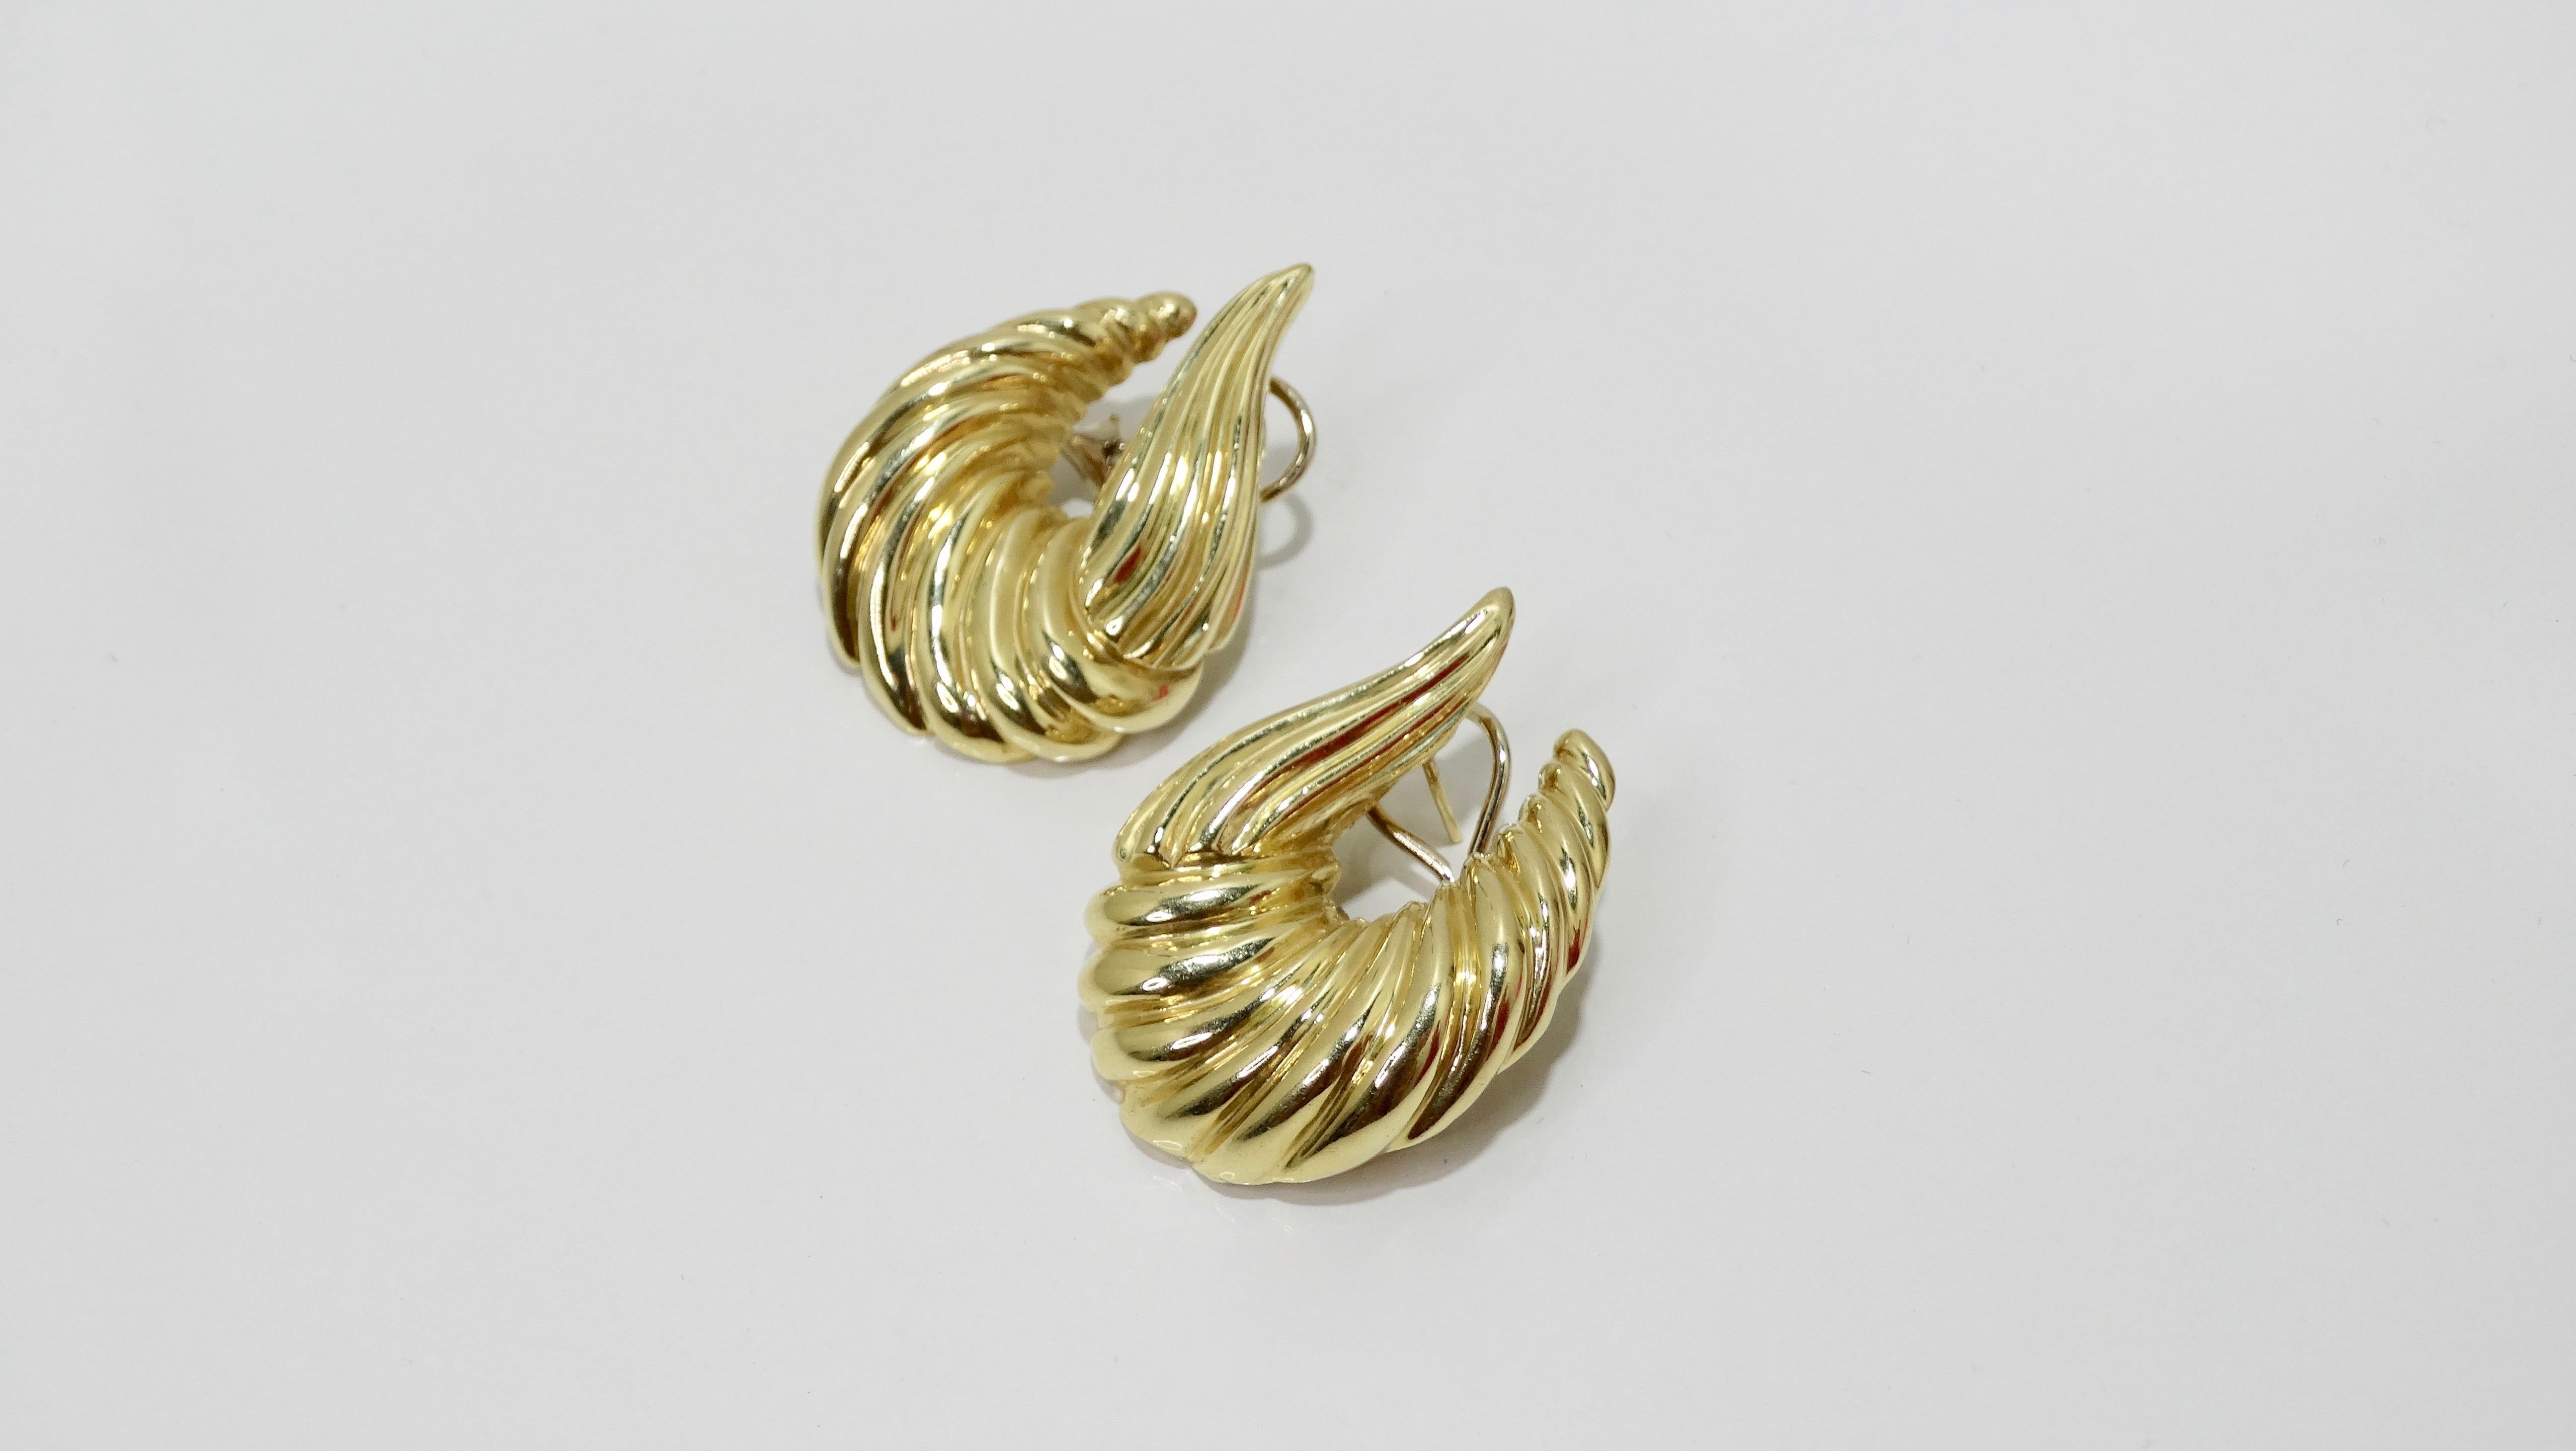 Vervollständigen Sie Ihre Kollektion mit diesen atemberaubenden Ohrringen! Diese Ohrringe im Krabbenstil aus glänzendem 14-karätigem Gold mit asymmetrischem Rippendesign stammen aus den 1970er Jahren. Die Ohrringe haben einen durchbrochenen